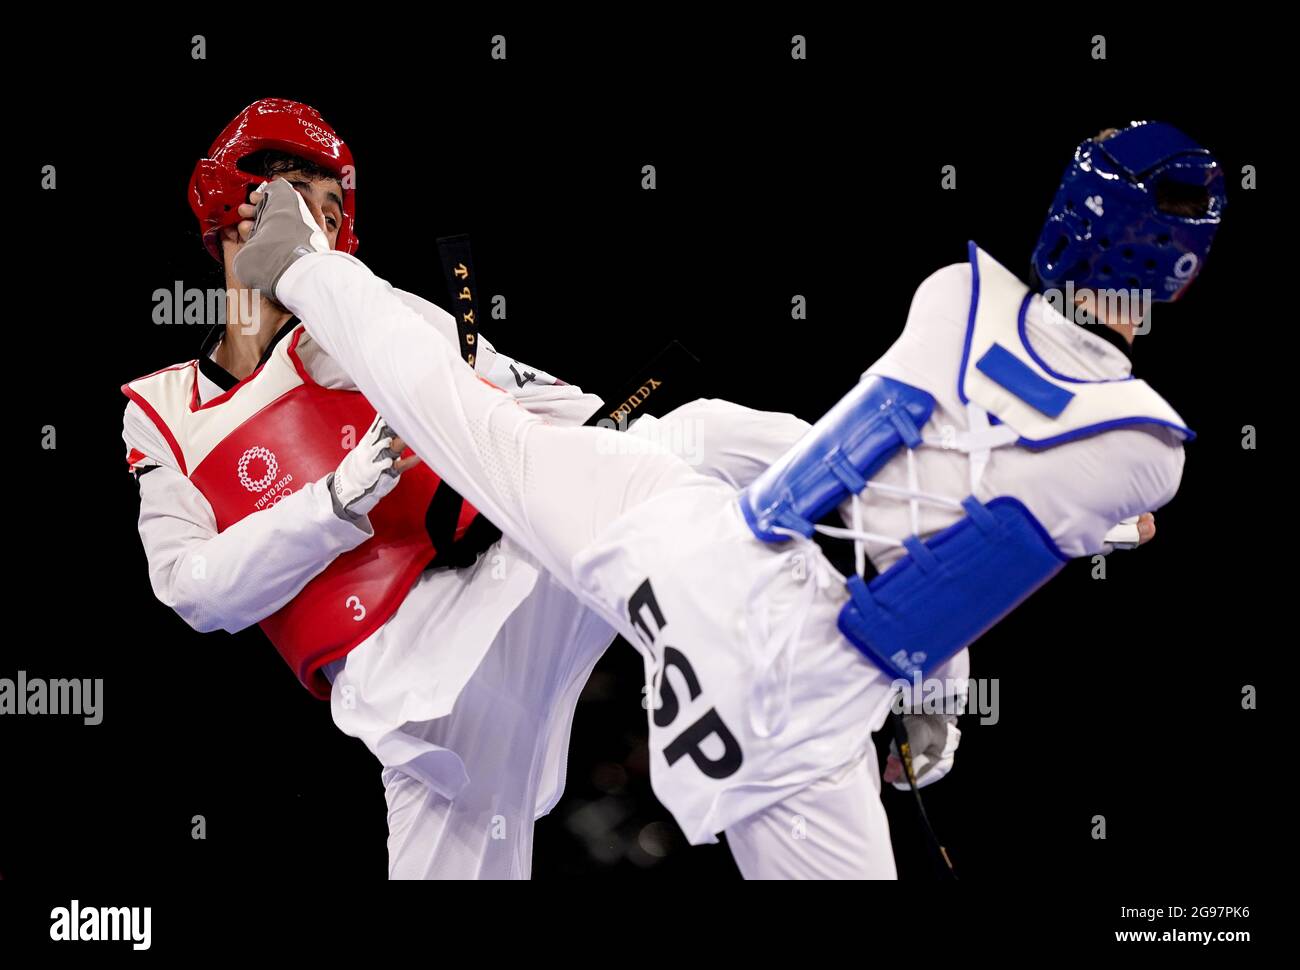 L'egiziano Abdelrahman Wael Mahmoud Abow (a sinistra) compete contro Javier Perez Polo in Spagna nel round maschile di -68KG del 16 alla Makuhari Messe Hall A il secondo giorno dei Giochi Olimpici di Tokyo 2020 in Giappone. Data immagine: Domenica 25 luglio 2021. Foto Stock